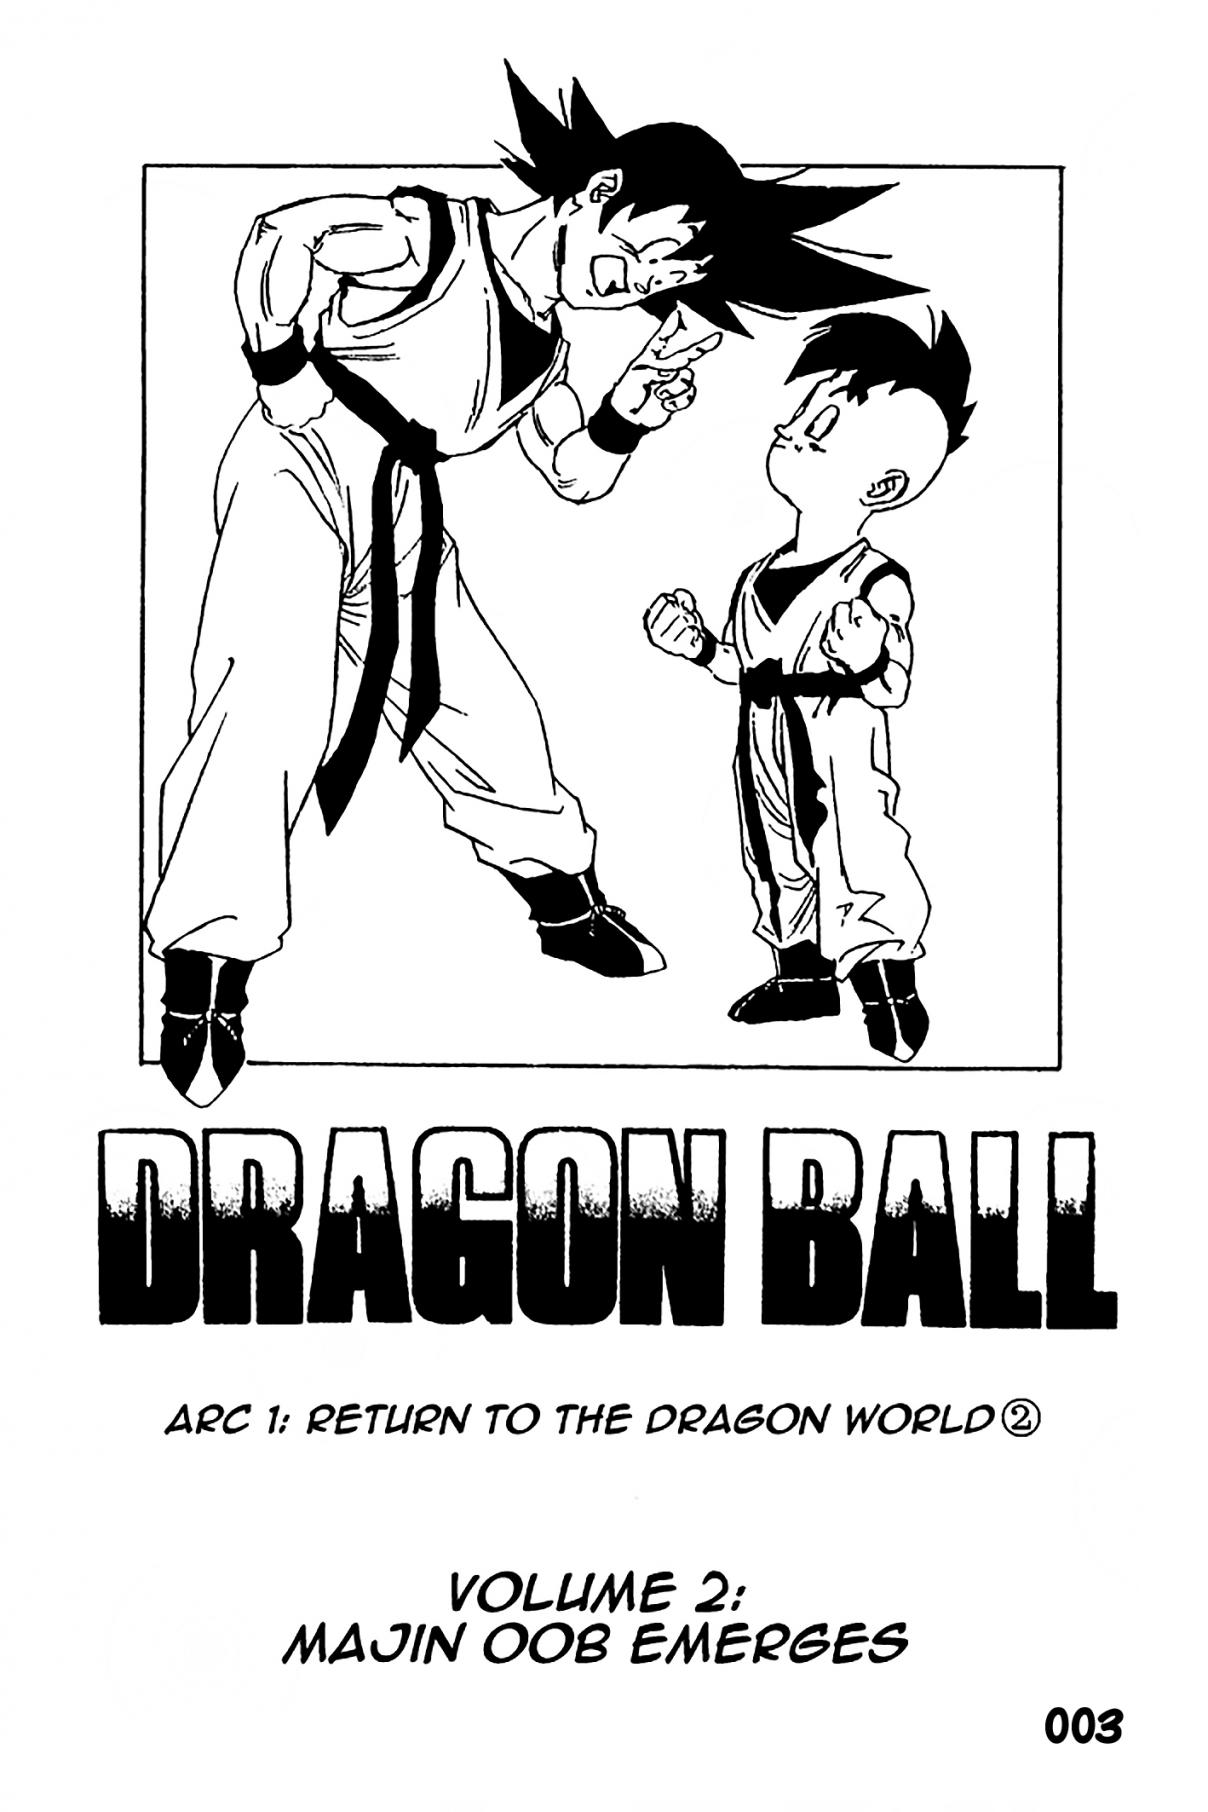 Dragon Ball Zeroverse (Doujinshi) Vol. 2 Majin Buu Emerges